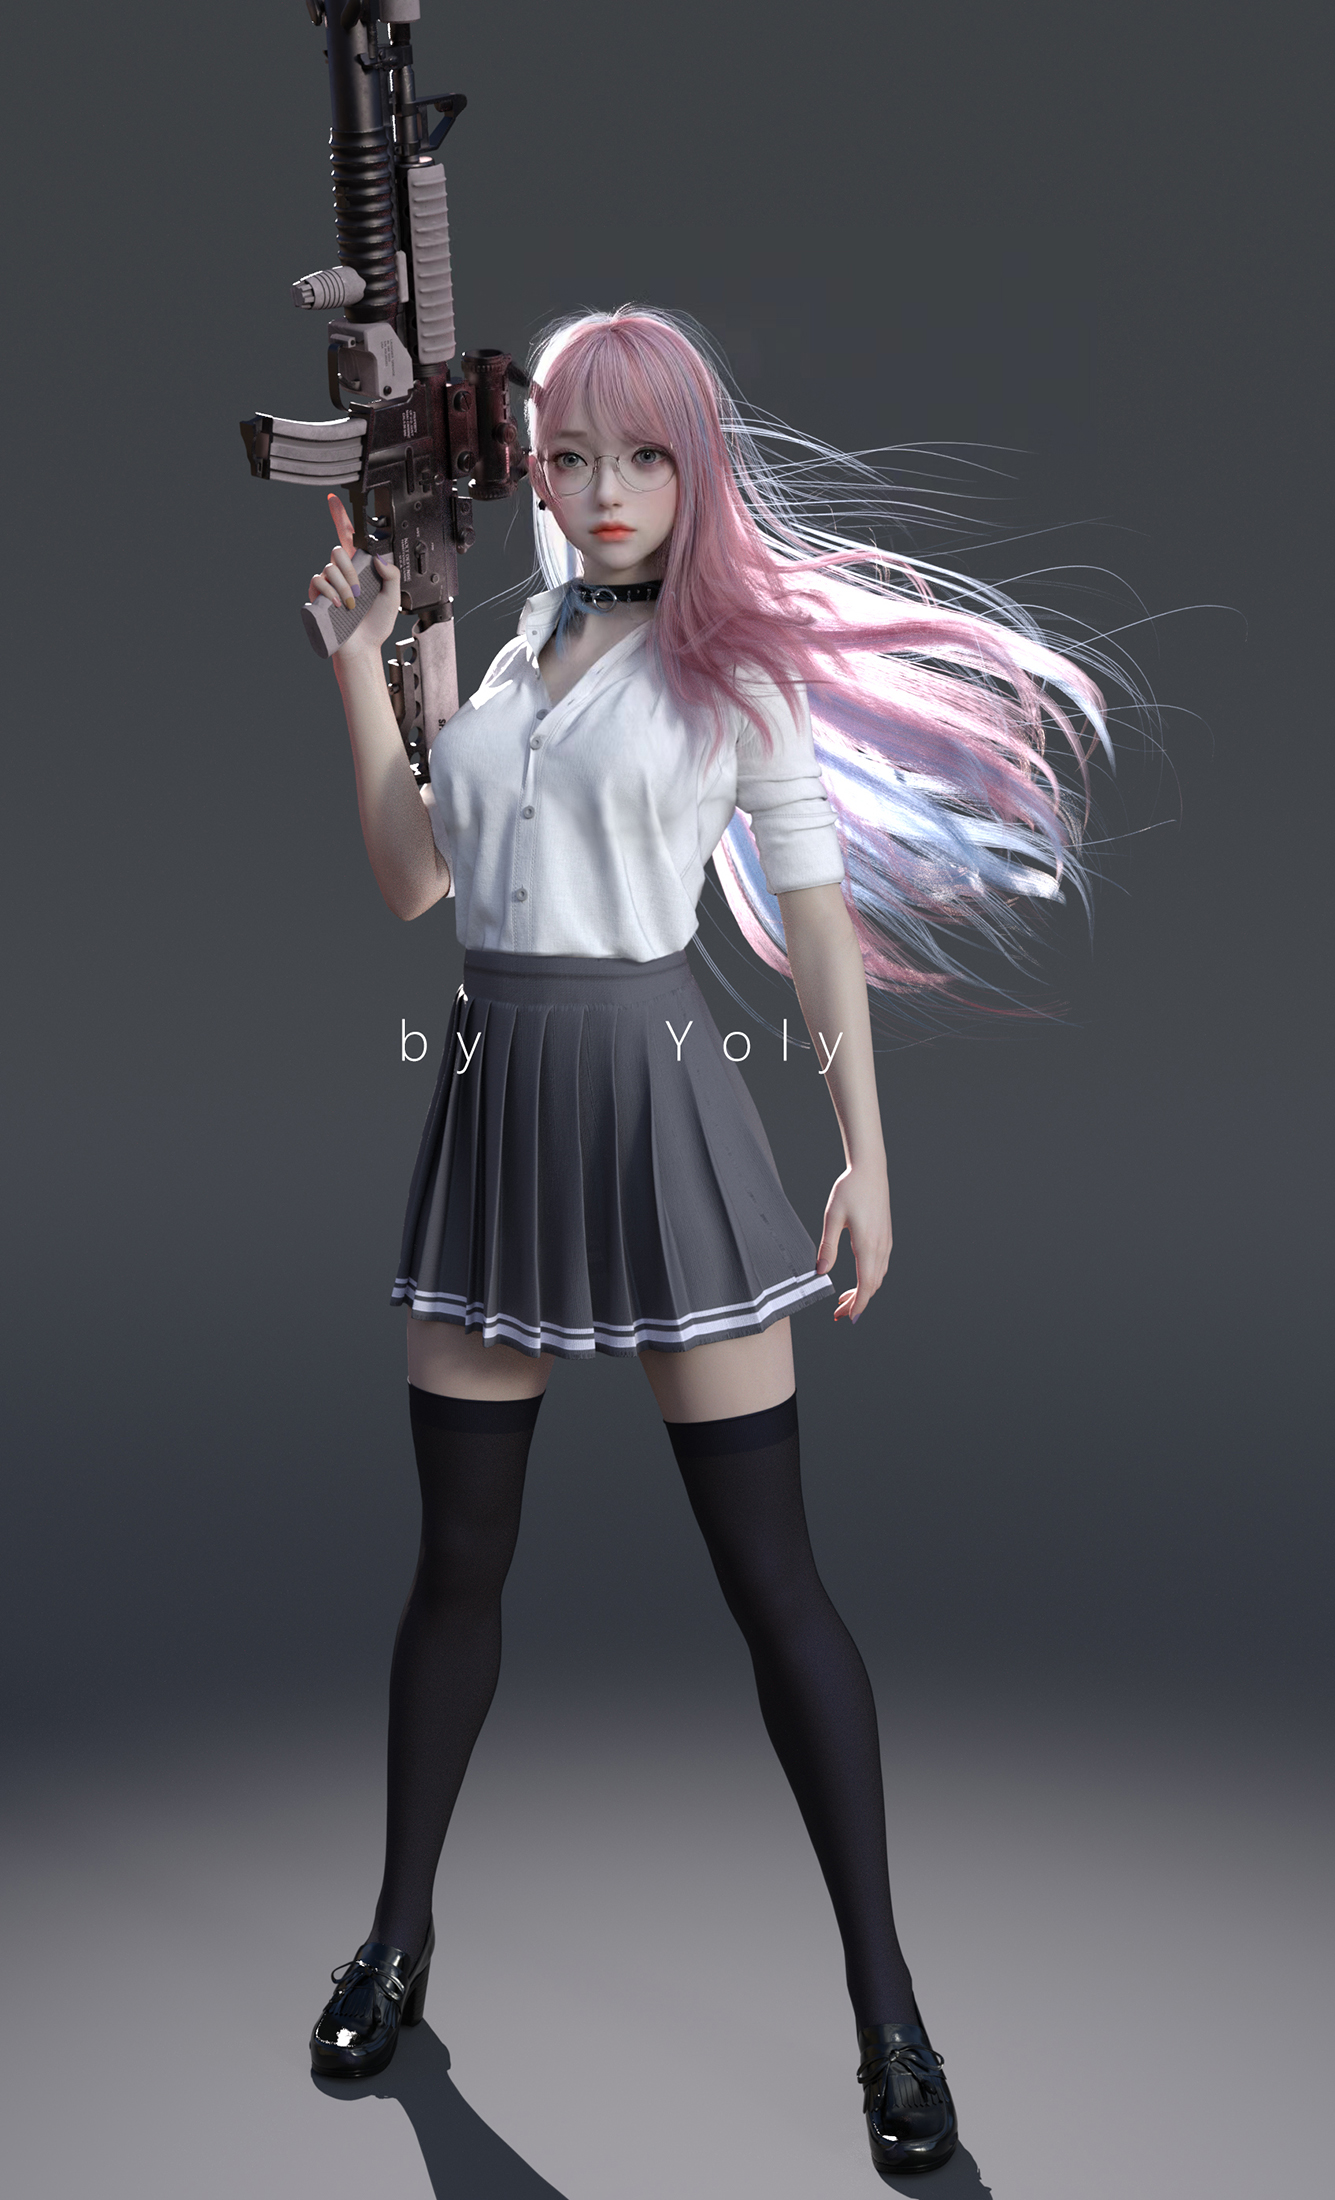 CGi Digital Art Fantasy Girl Schoolgirl School Uniform School Skirt Women Women Indoors Yoly Gun 1335x2200